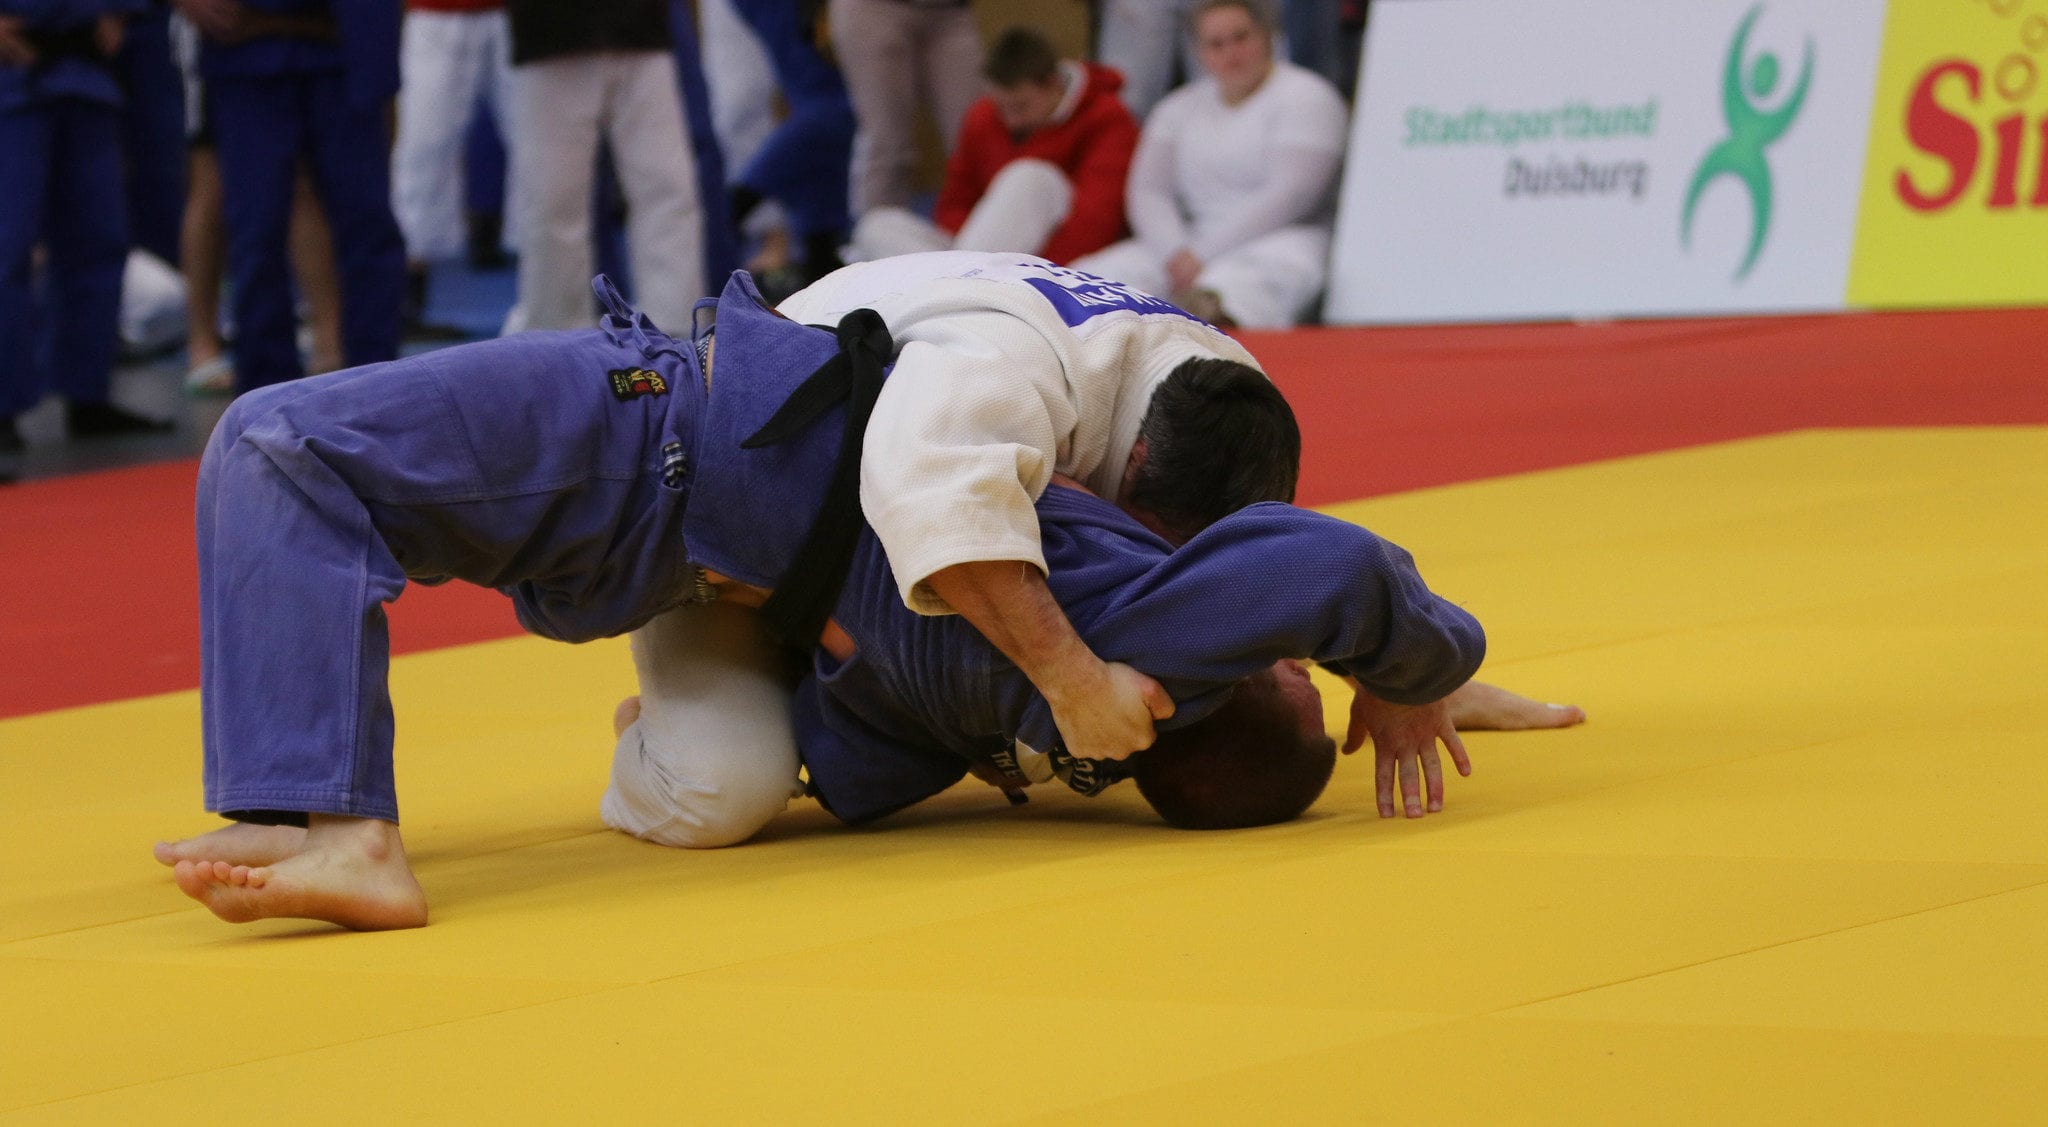 À Colmar, l’entraîneur de judo condamné a été reconduit puis décoré